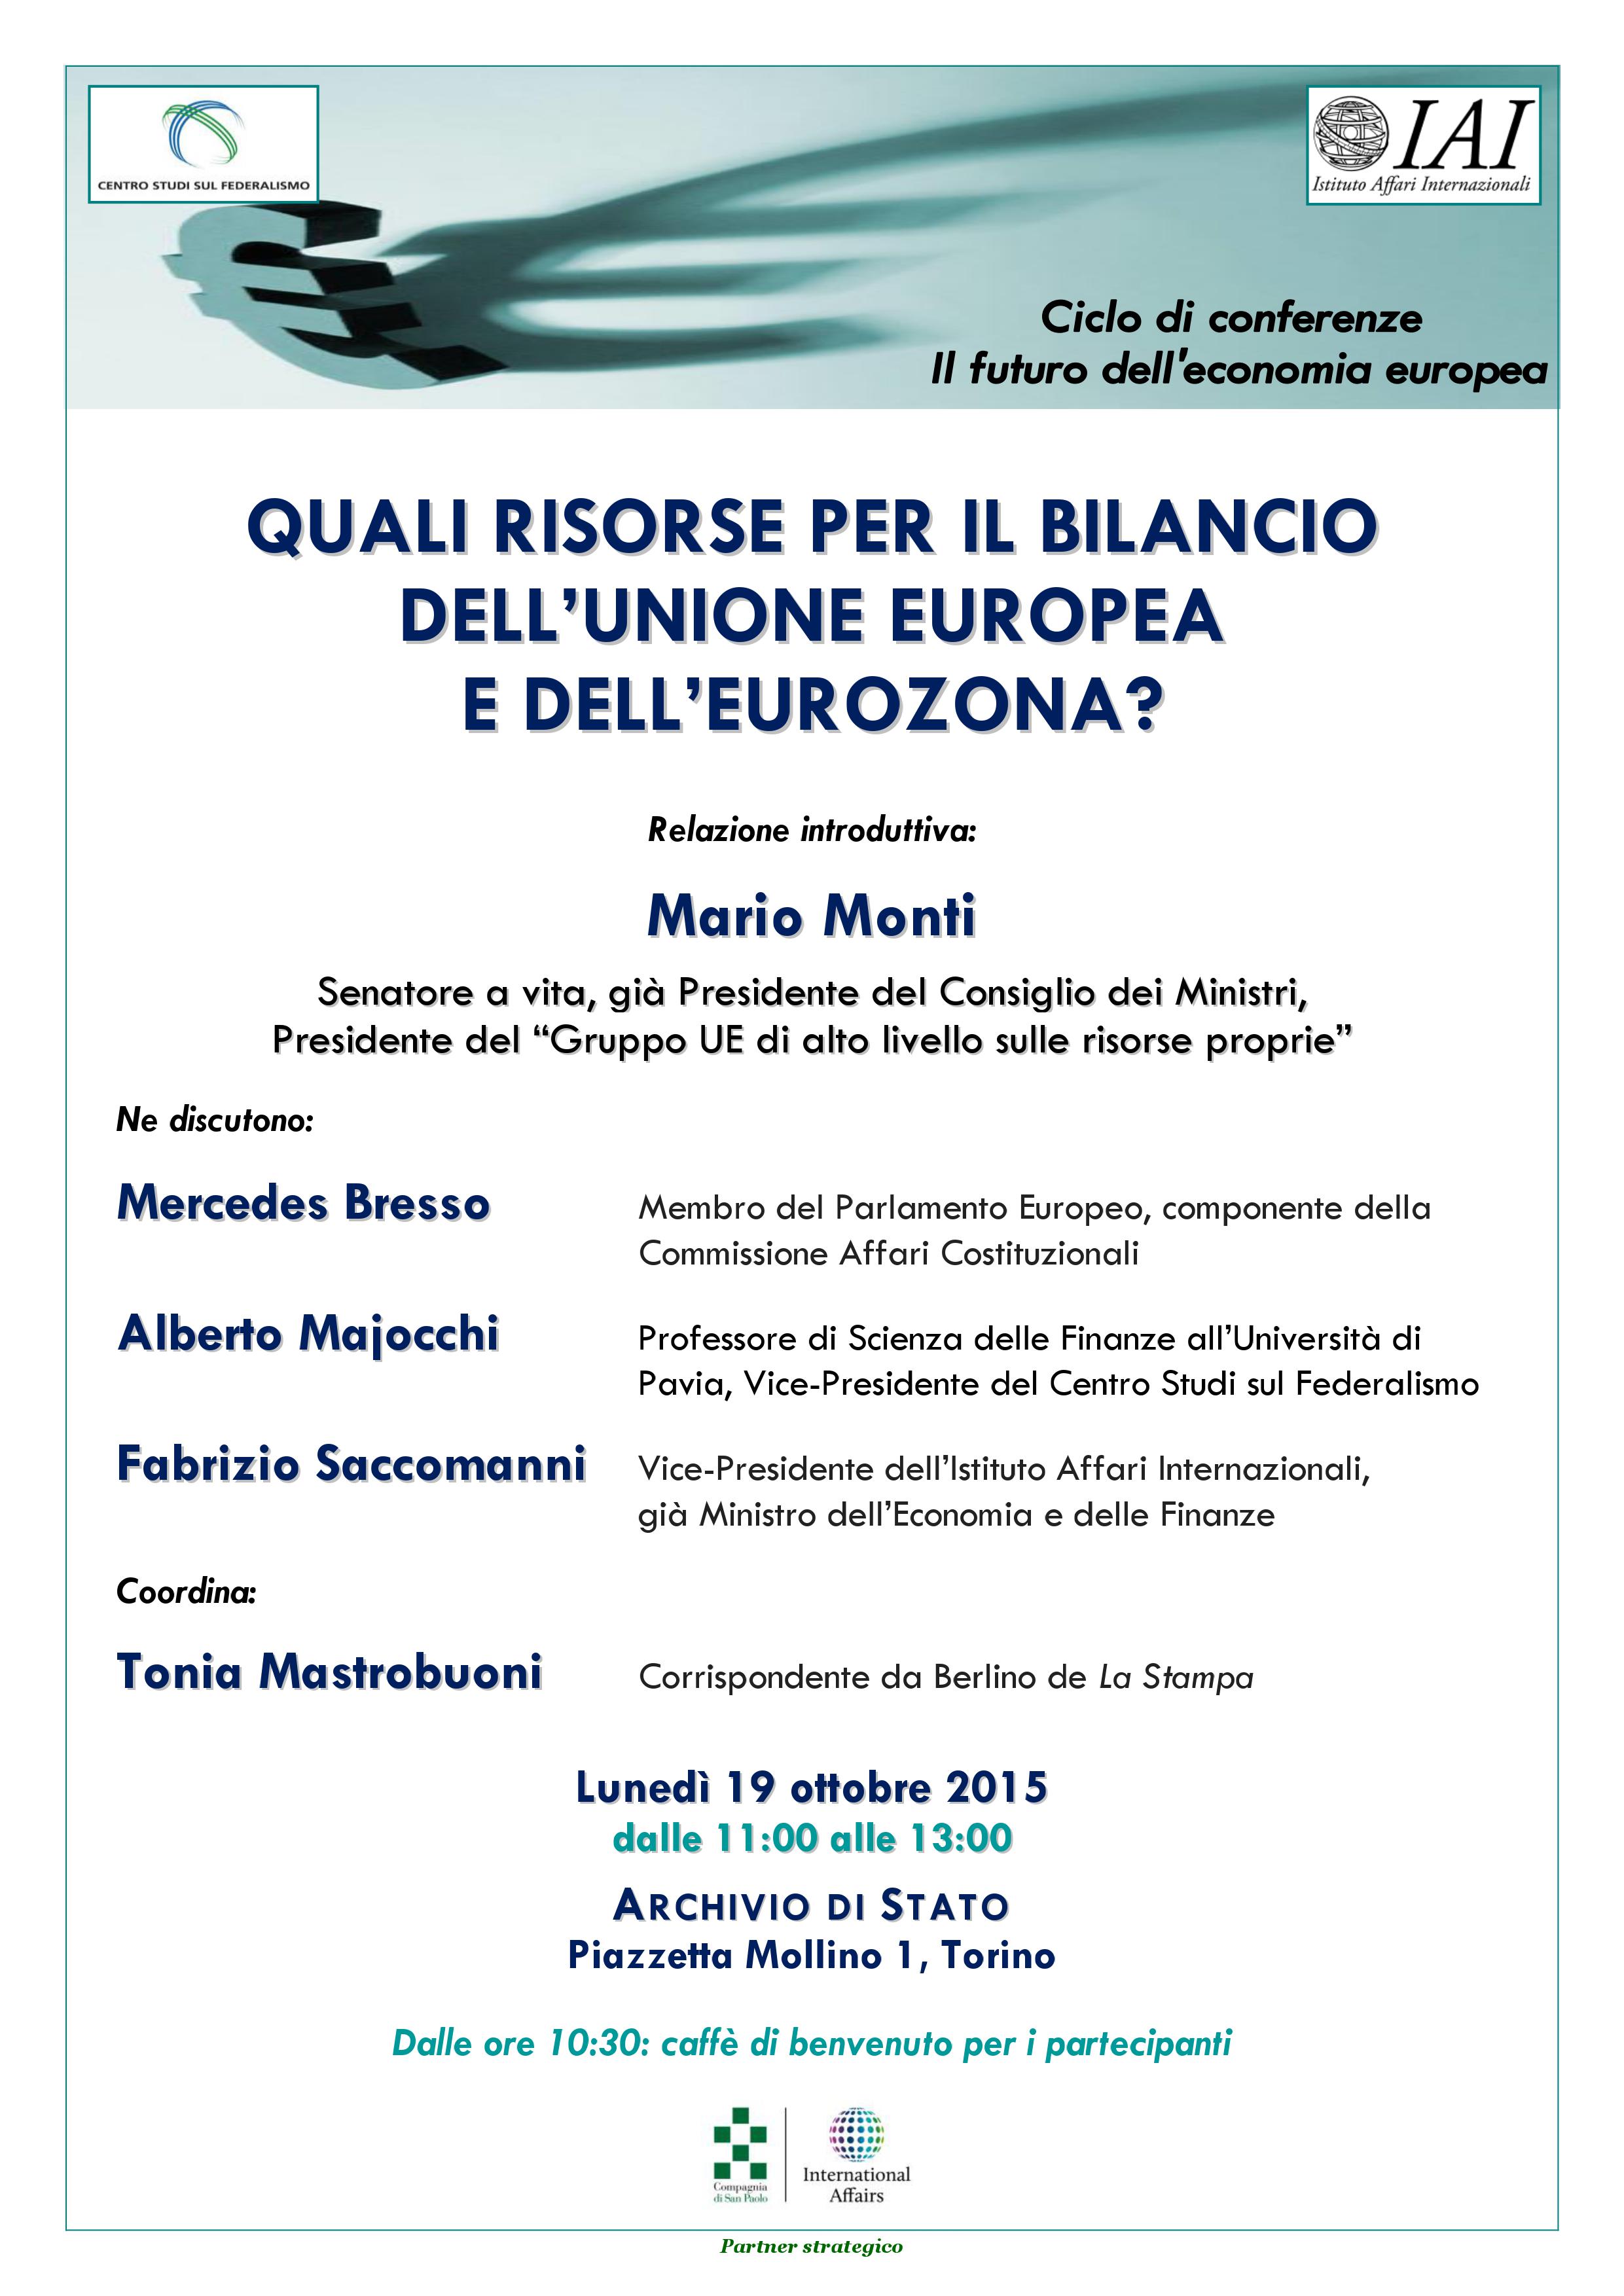 Conferenza “Quali risorse per il bilancio dell’Unione europea e dell’eurozona ?”